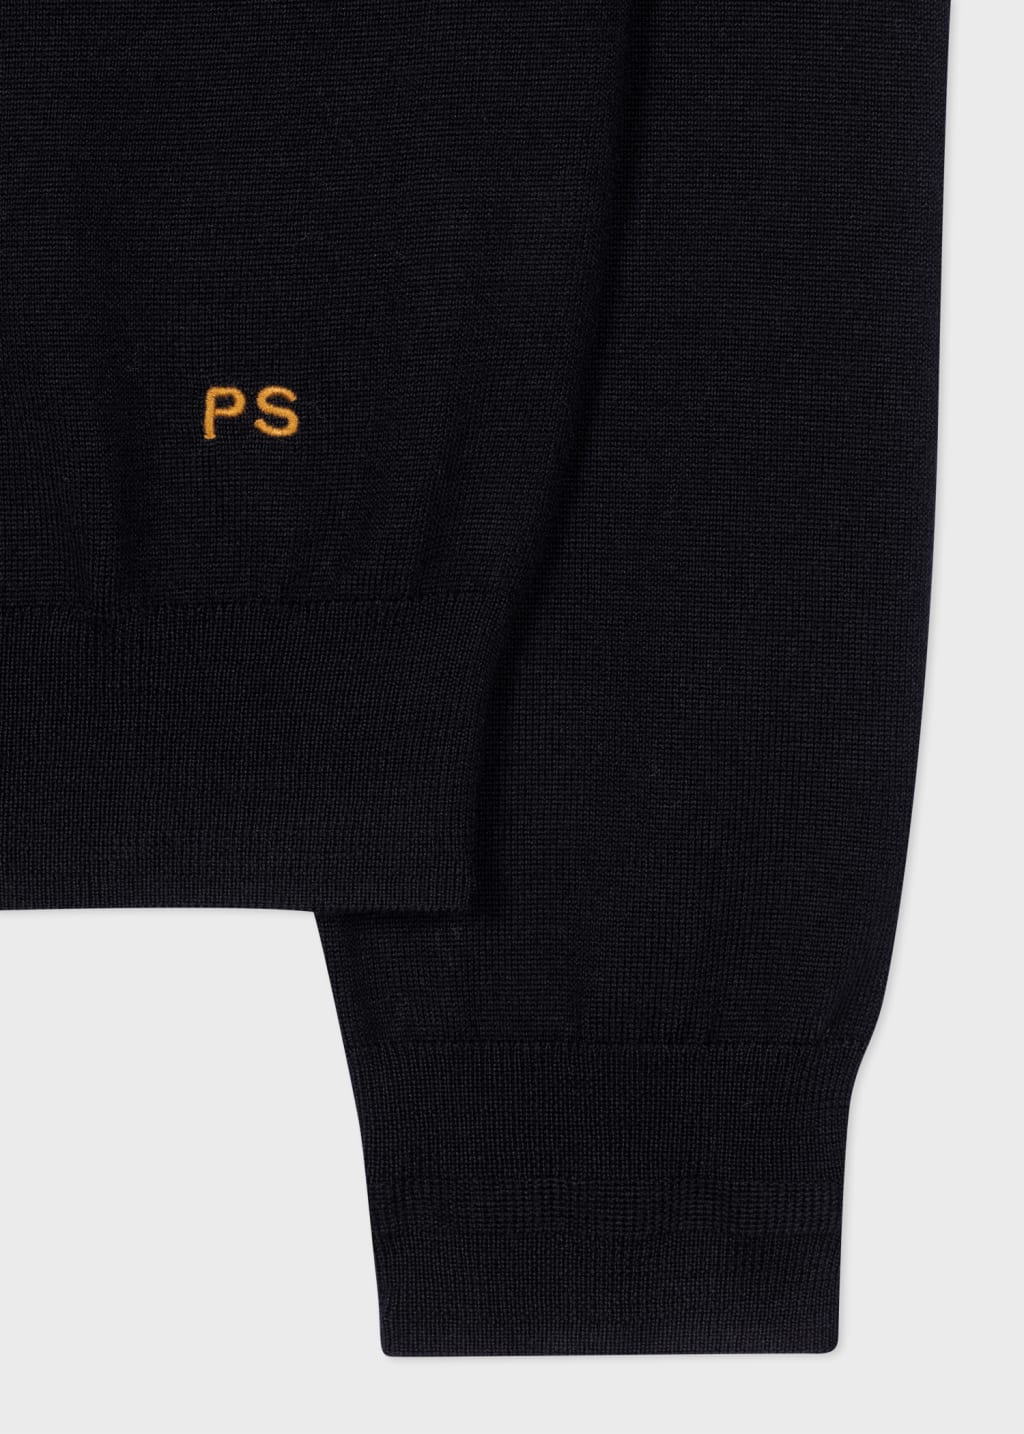 Detail View - Black And Orange Merino Wool Half Zip Sweater Paul Smith